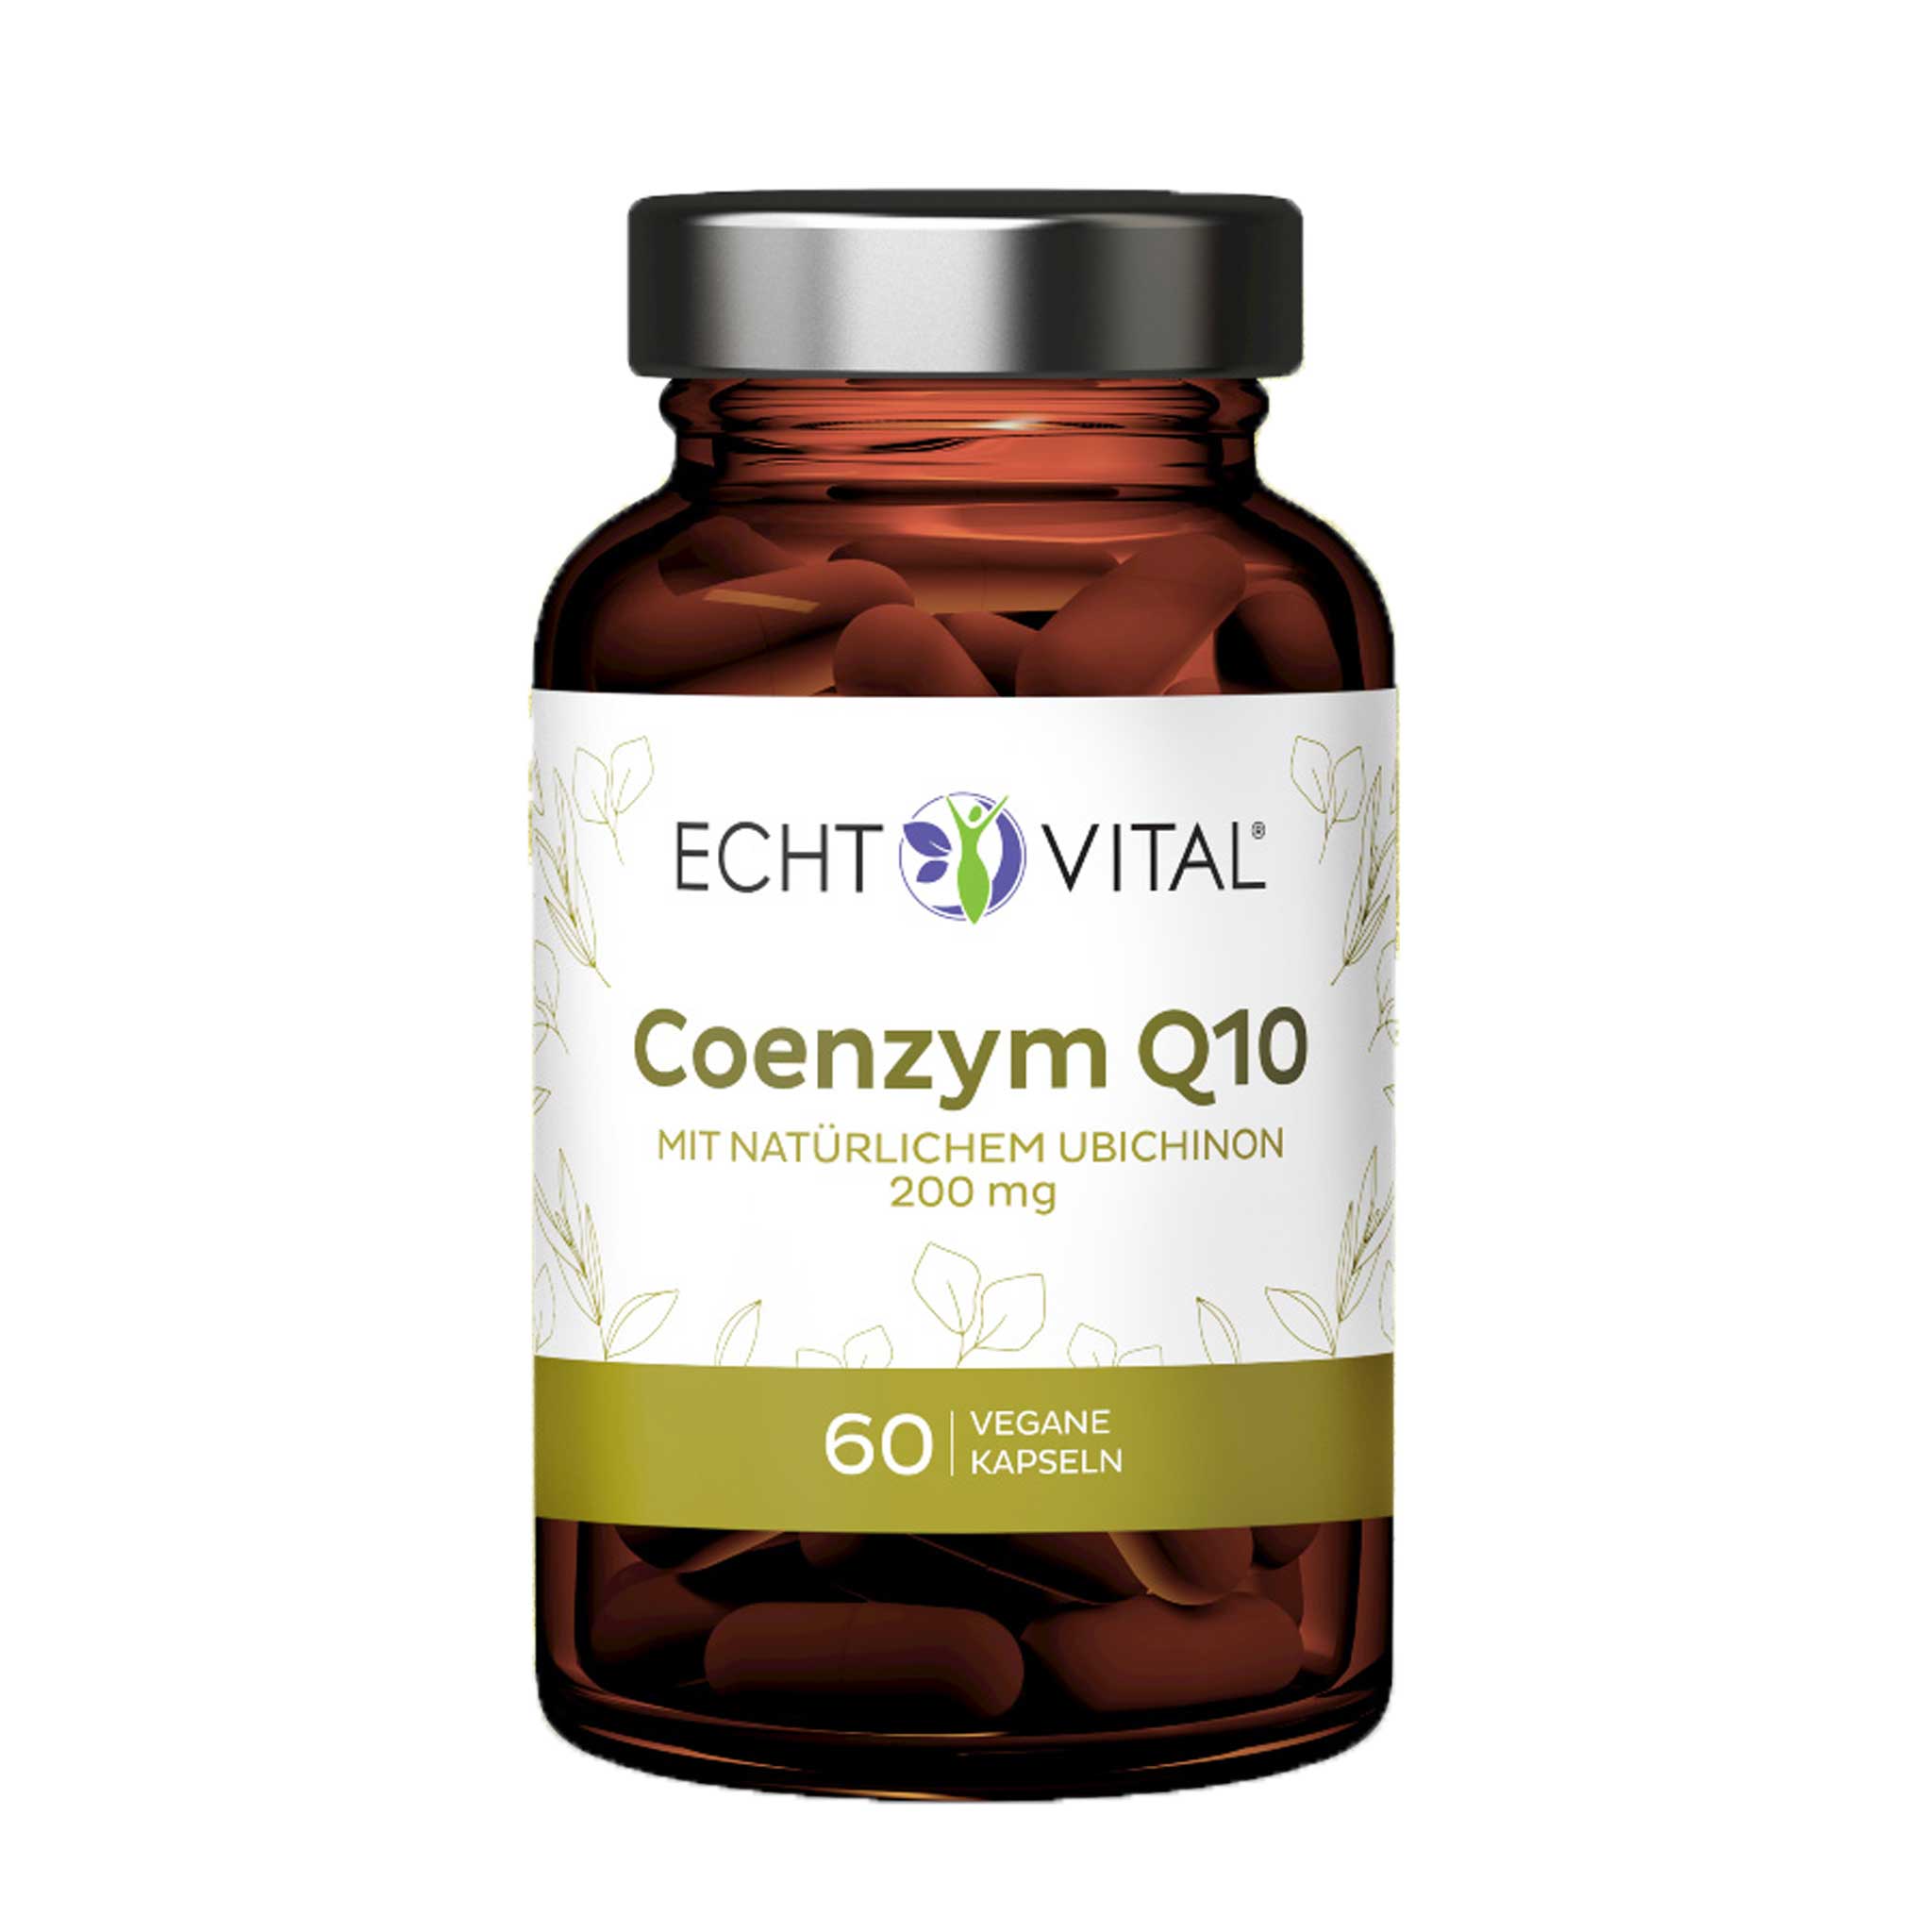 Coenzym Q10 von Echt Vital beinhaltet 60 vegane Kapseln